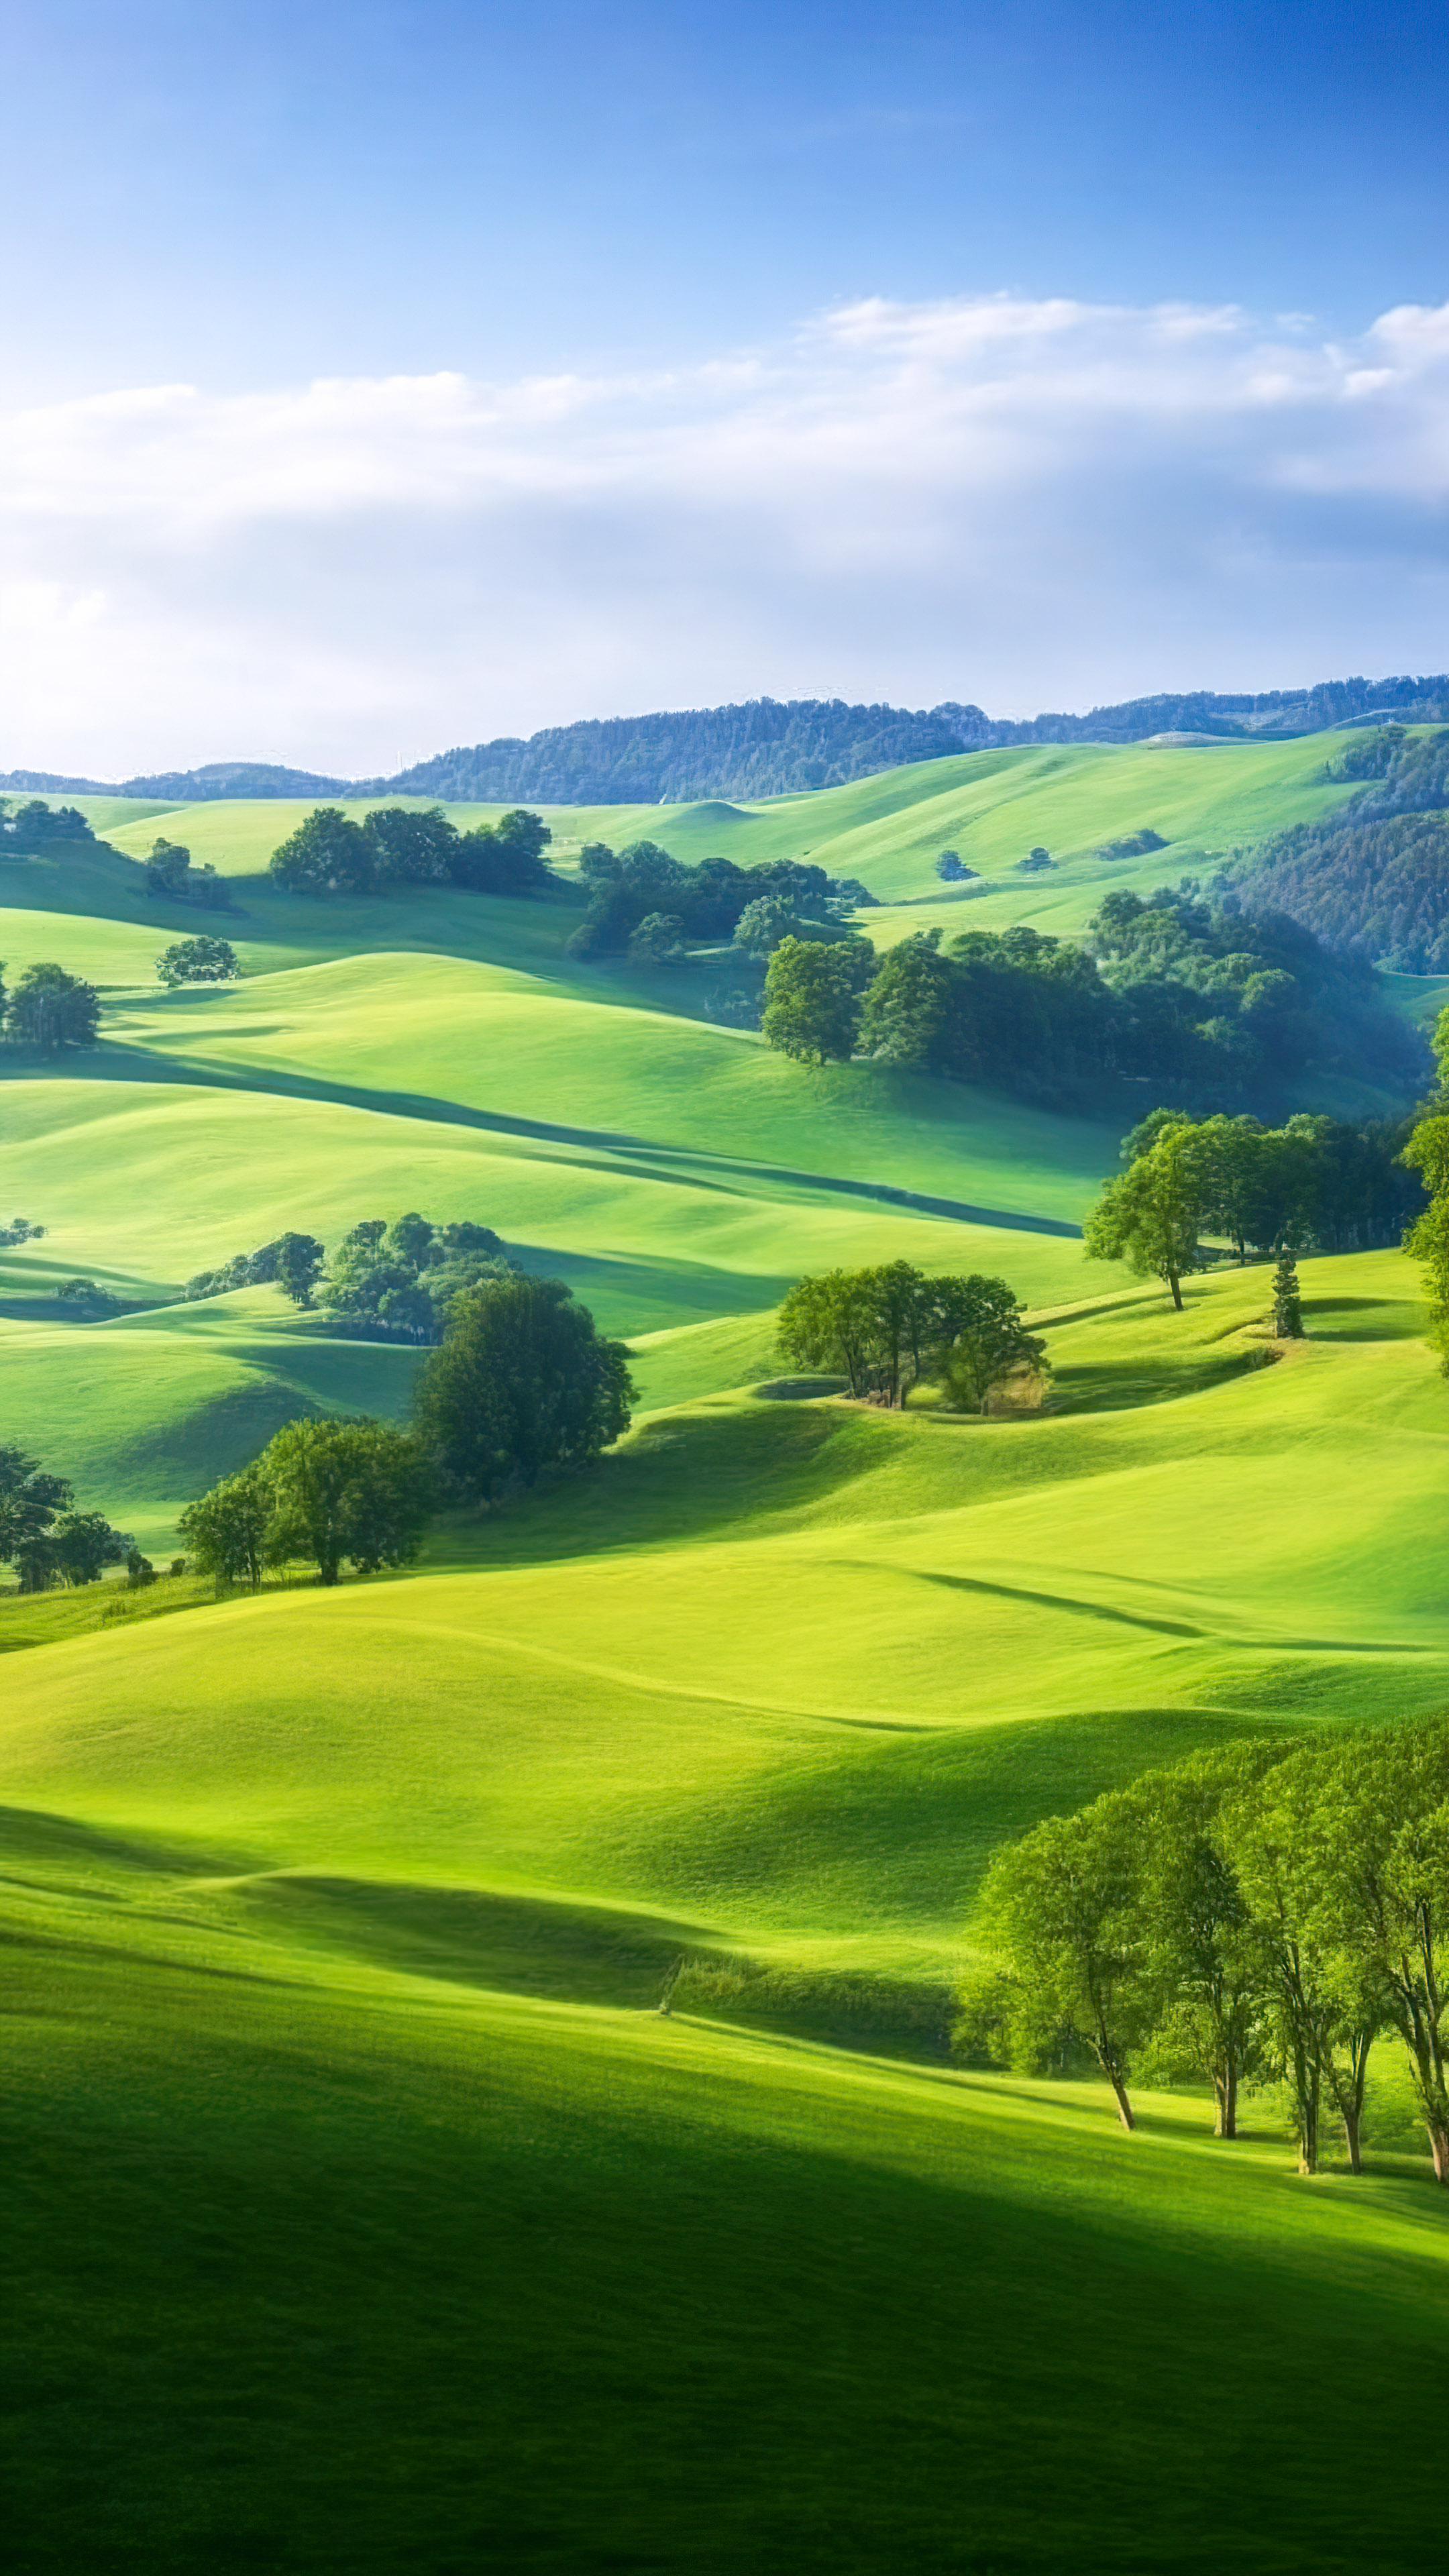 Savourez la tranquillité de notre fond d'écran de paysage en HD, présentant une scène paisible de campagne avec des collines ondulantes, des pâturages verts et un ciel clair de jour.